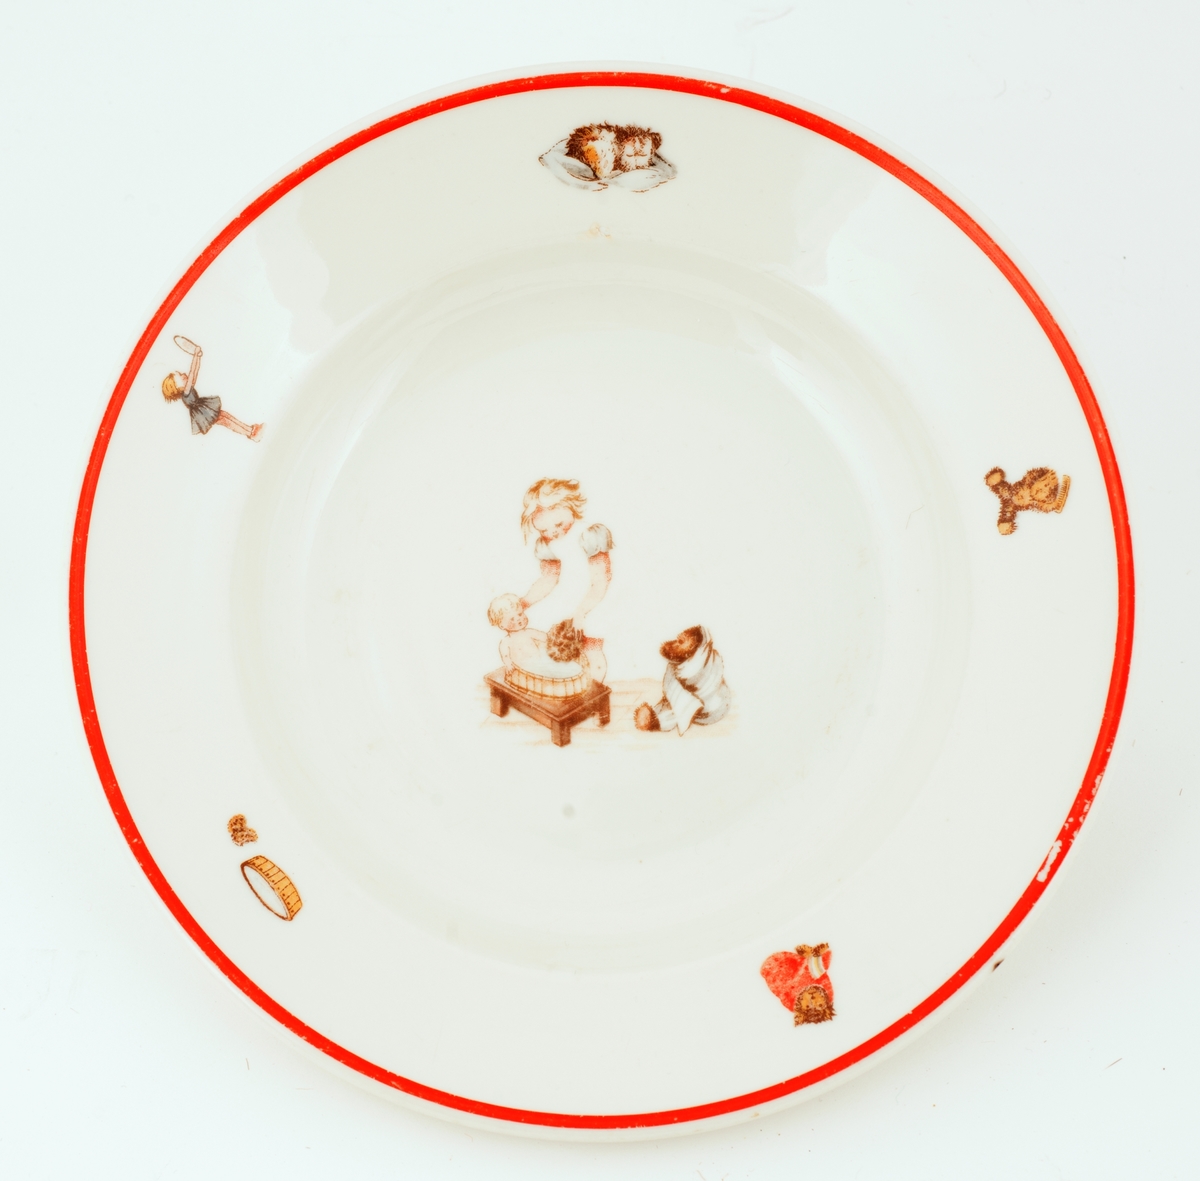 Dyp, hvit tallerken med rød munningsrand, dekorert med leketøysfigurer.